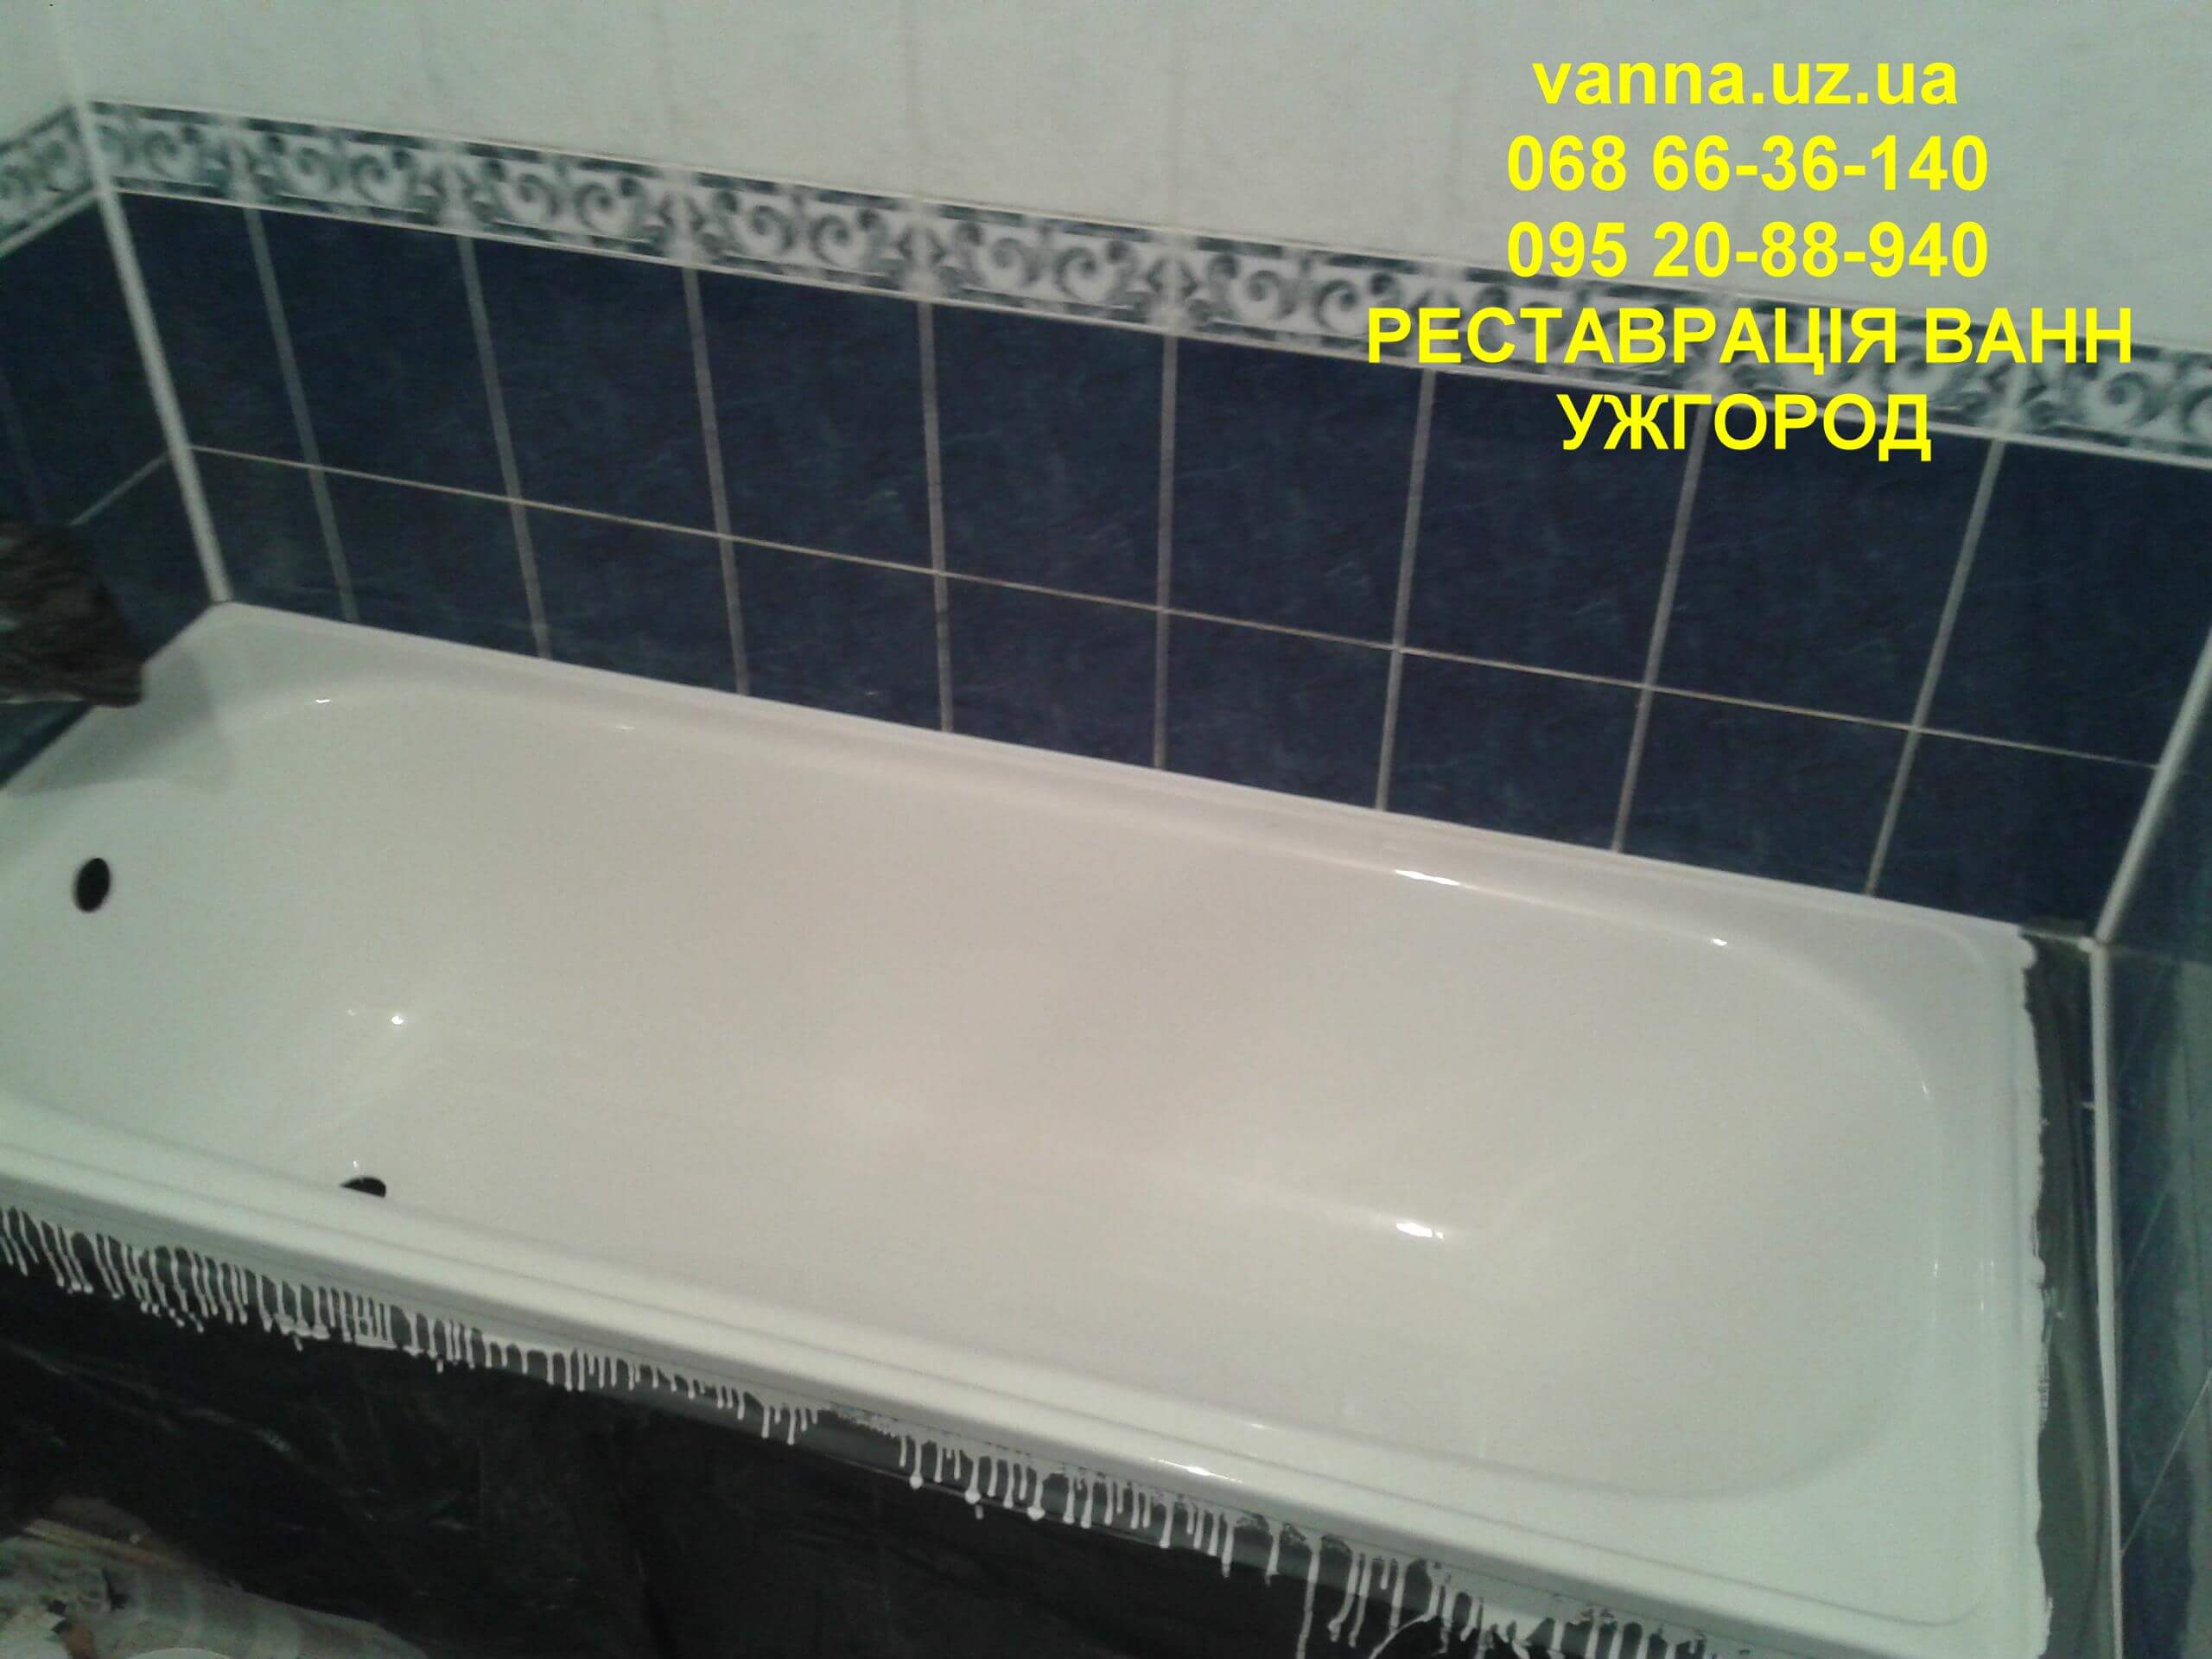 Якісно зроблена реставрація ванни в Ужгороді (3)